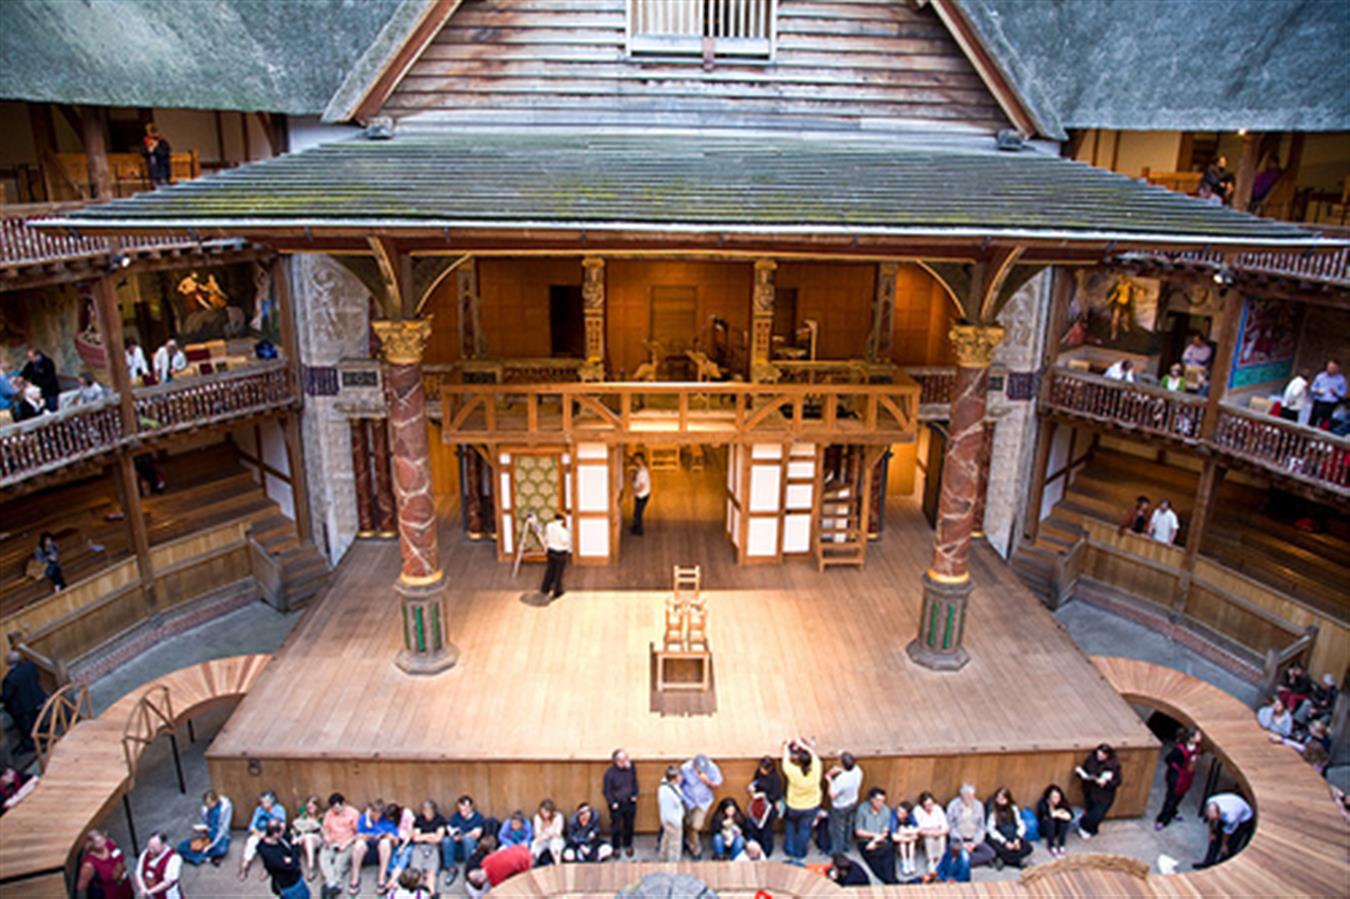 Shakespeare s theatre. Театр Глобус Шекспира в Лондоне. Глоуб театр в Лондоне. Уильям Шекспир театр Глобус. Шекспировский театр в Лондоне.